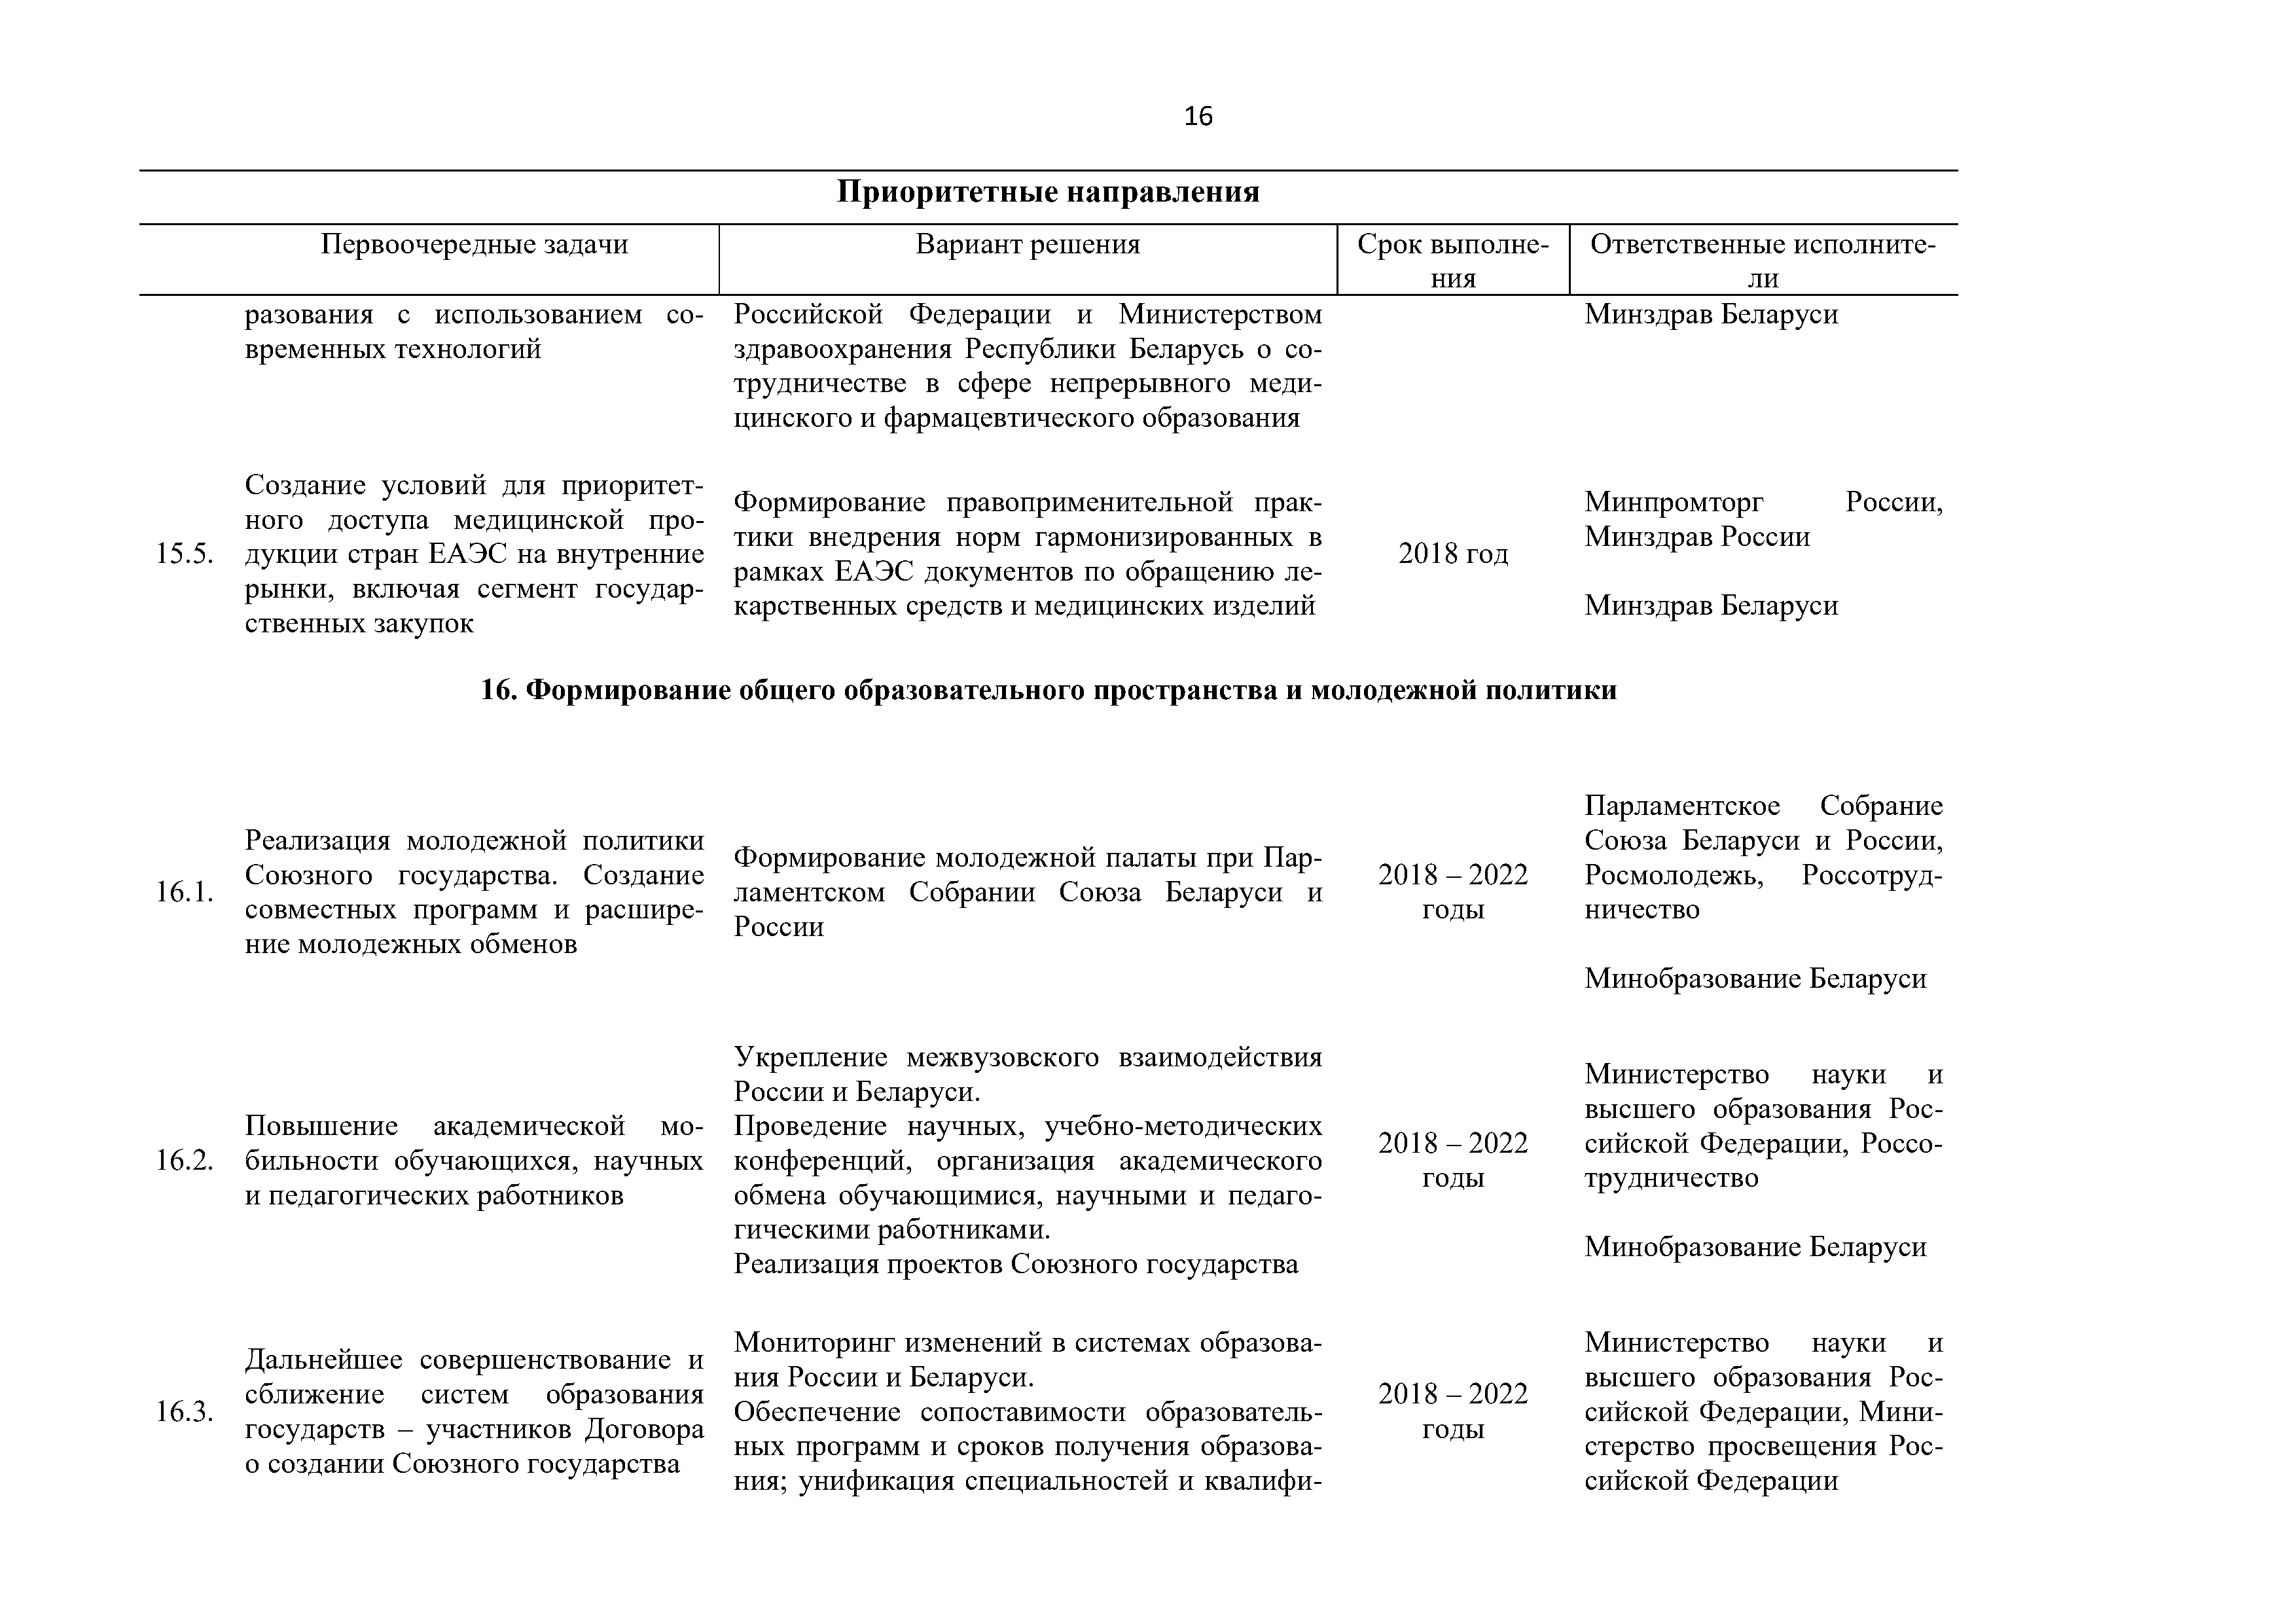 Приоритетные направления и первоочередные задачи развития Союзного государства на 2018 – 2022 г. (Страница 16)